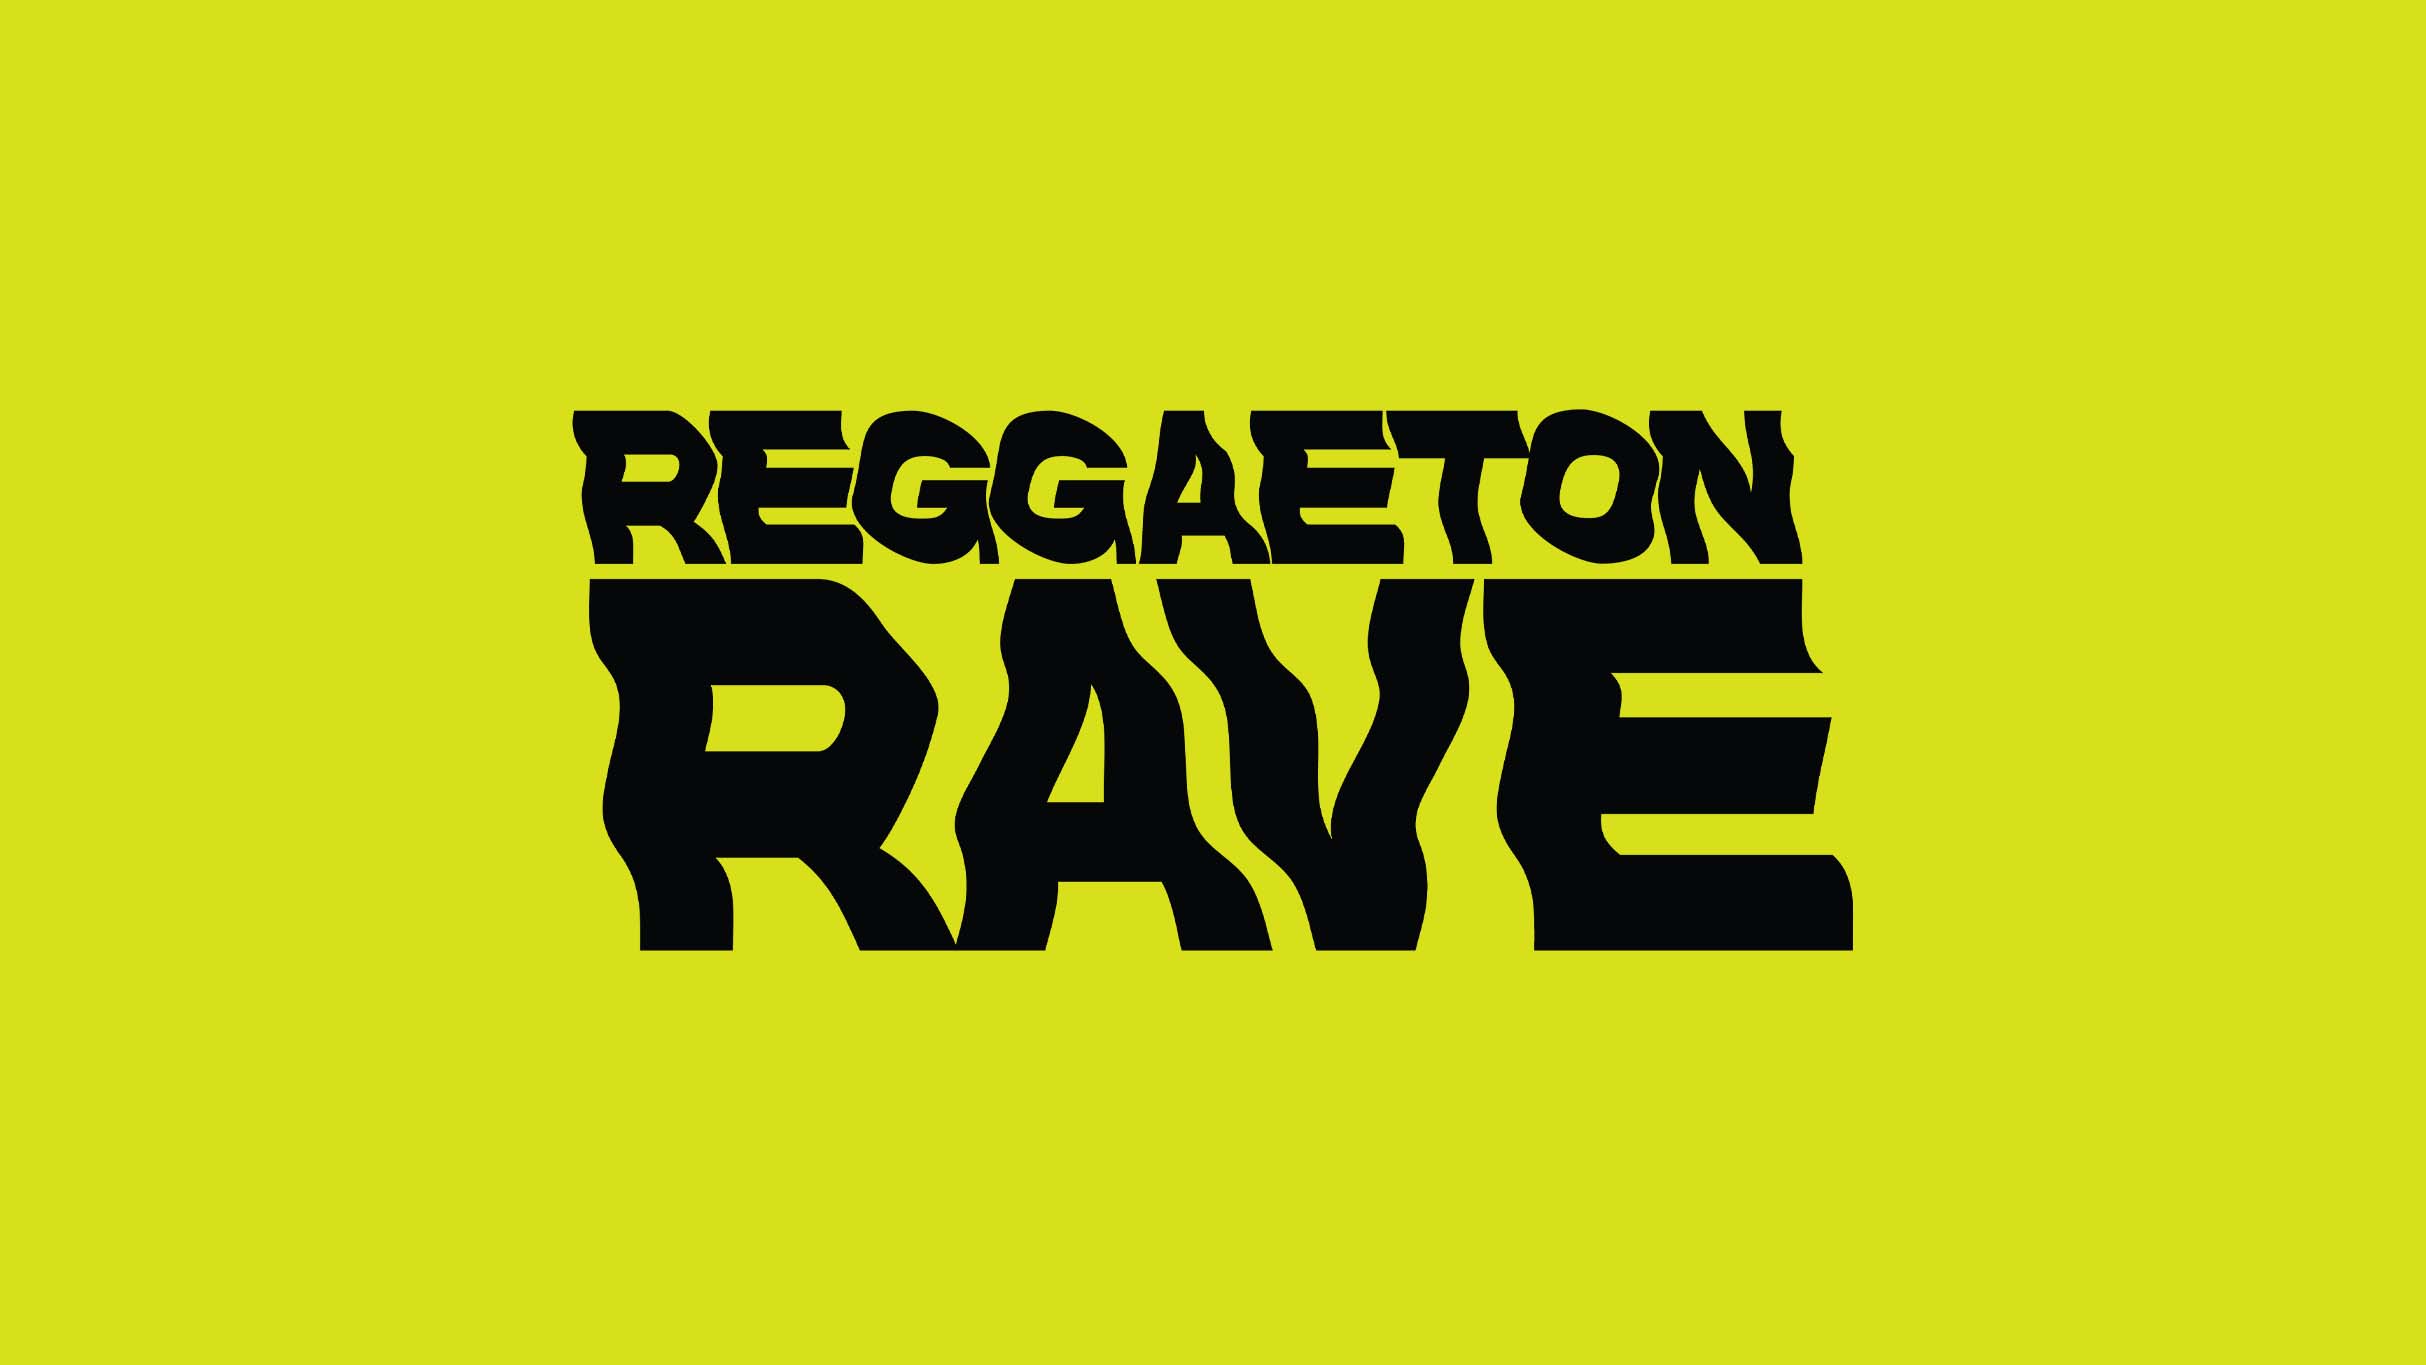 Reggaeton Rave - 21+